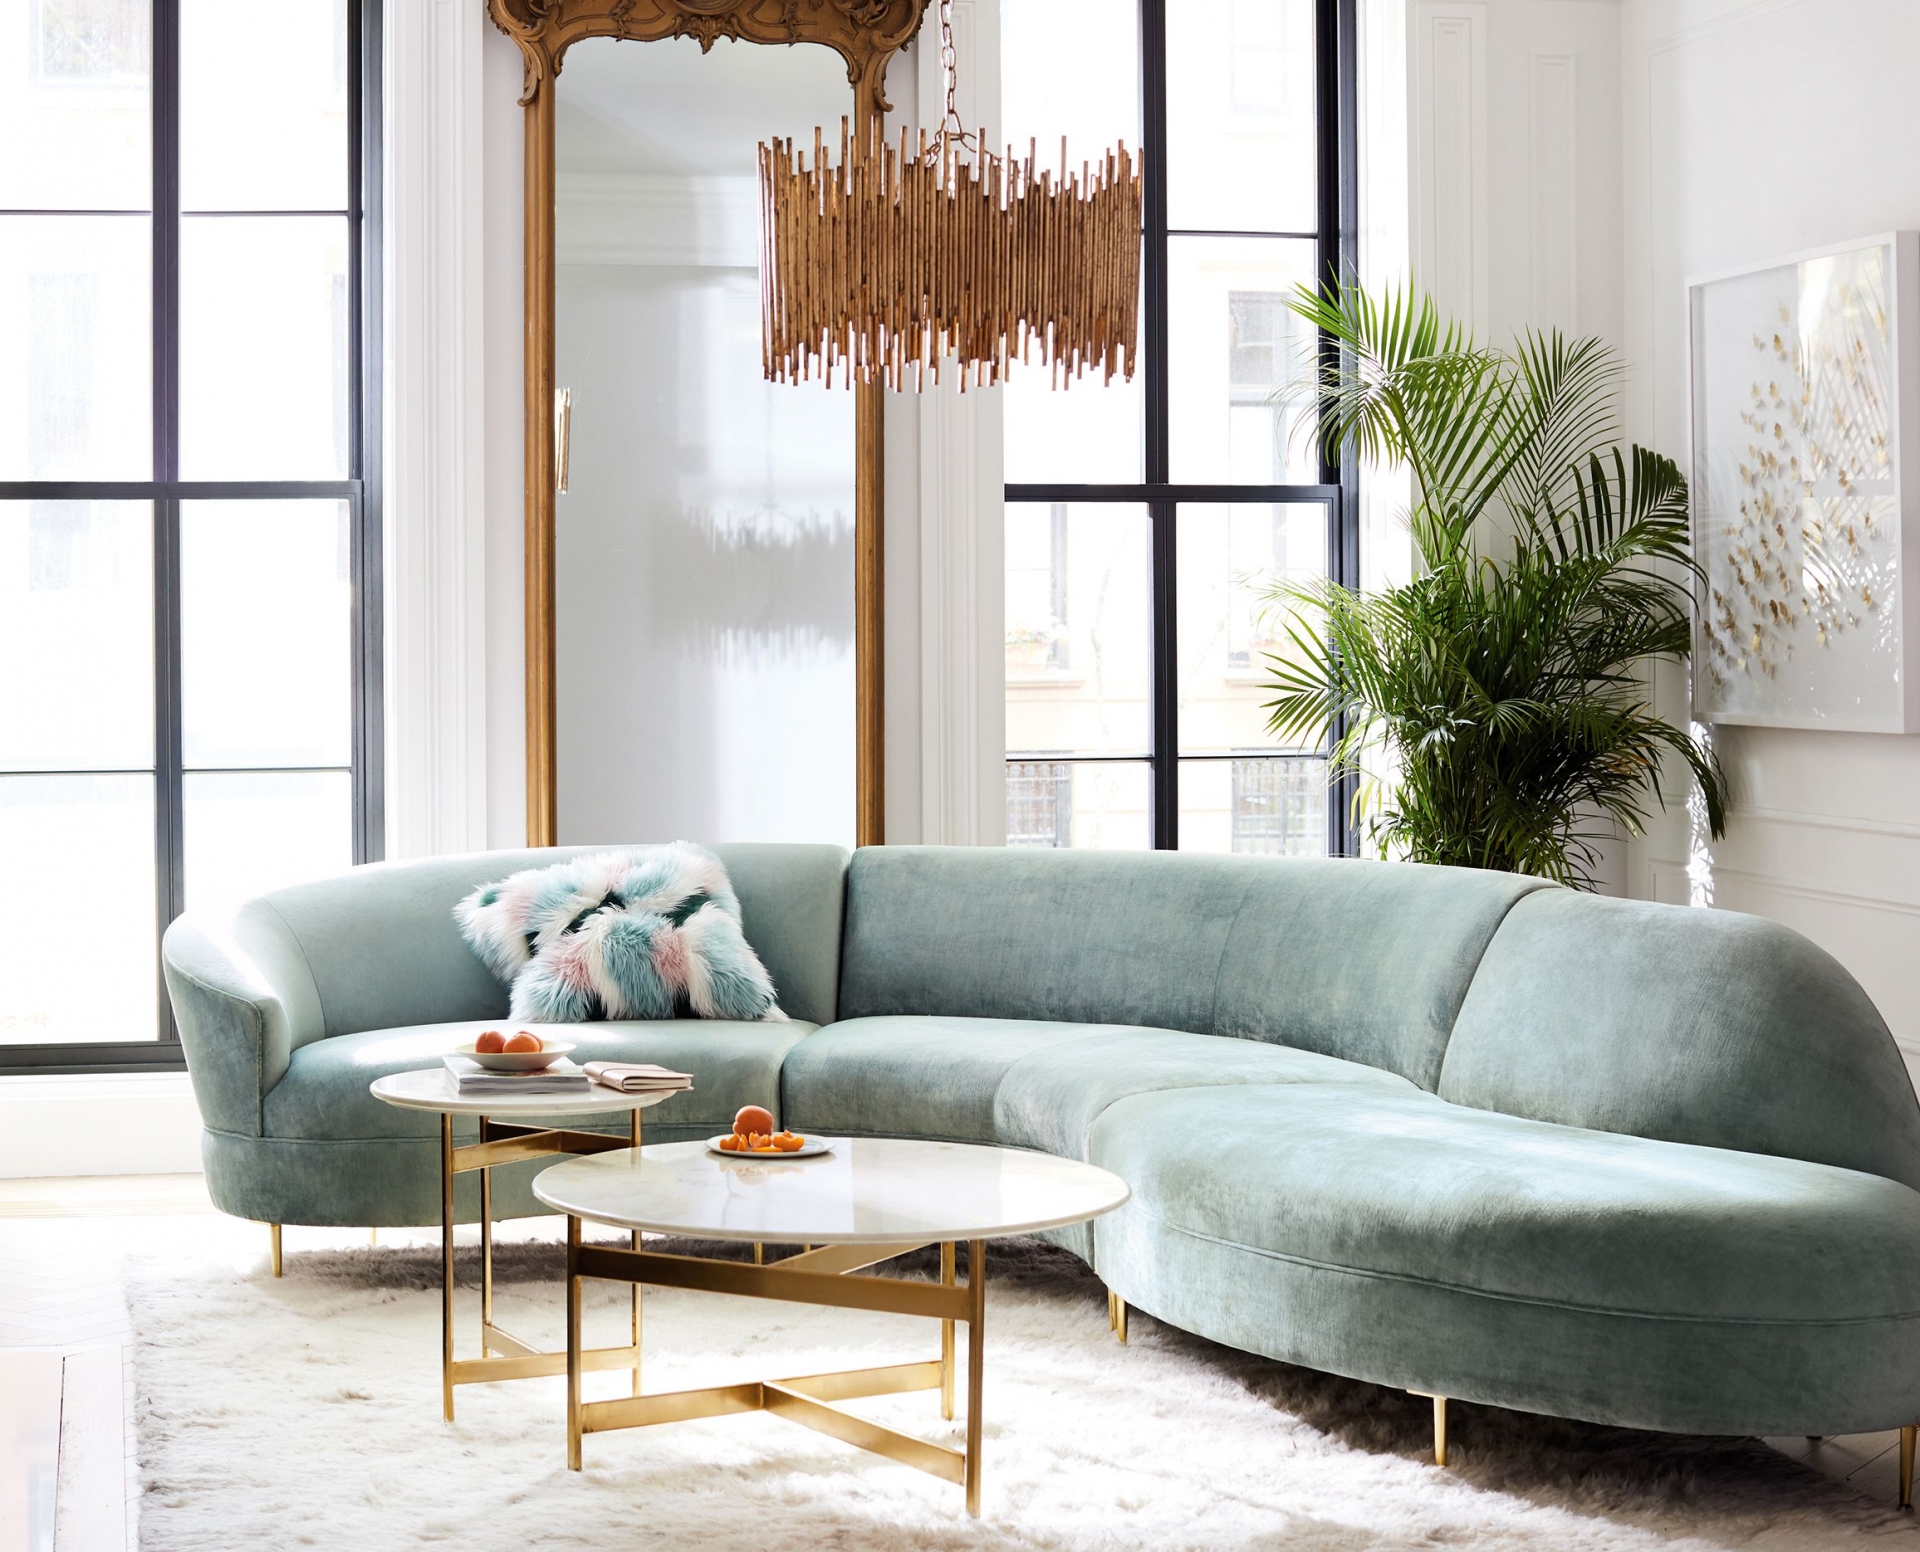 Thiết kế với đường cong mềm mại, mẫu sofa này sẽ mang lại một cảm giác tinh tế, mềm mại, uyển chuyển, cho không gian tinh tế và bớt đi sự cứng nhắc. 